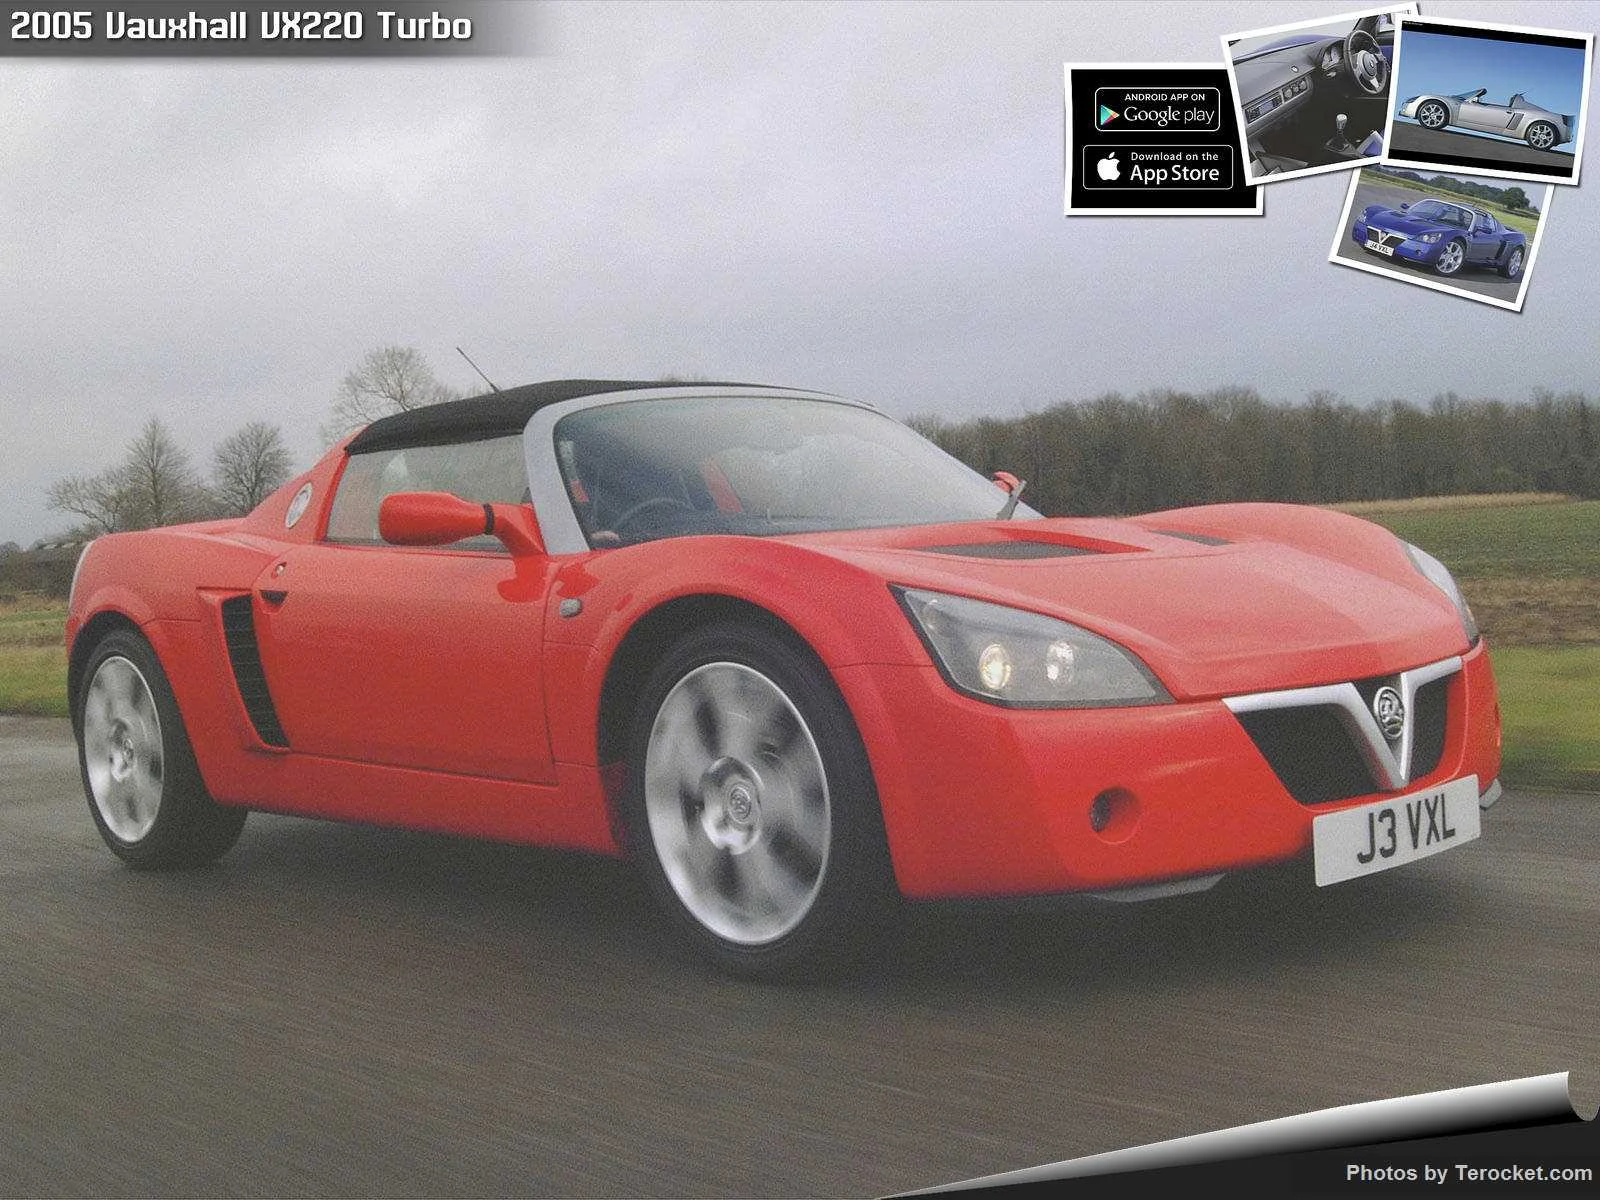 Hình ảnh xe ô tô Vauxhall VX220 Turbo 2005 & nội ngoại thất